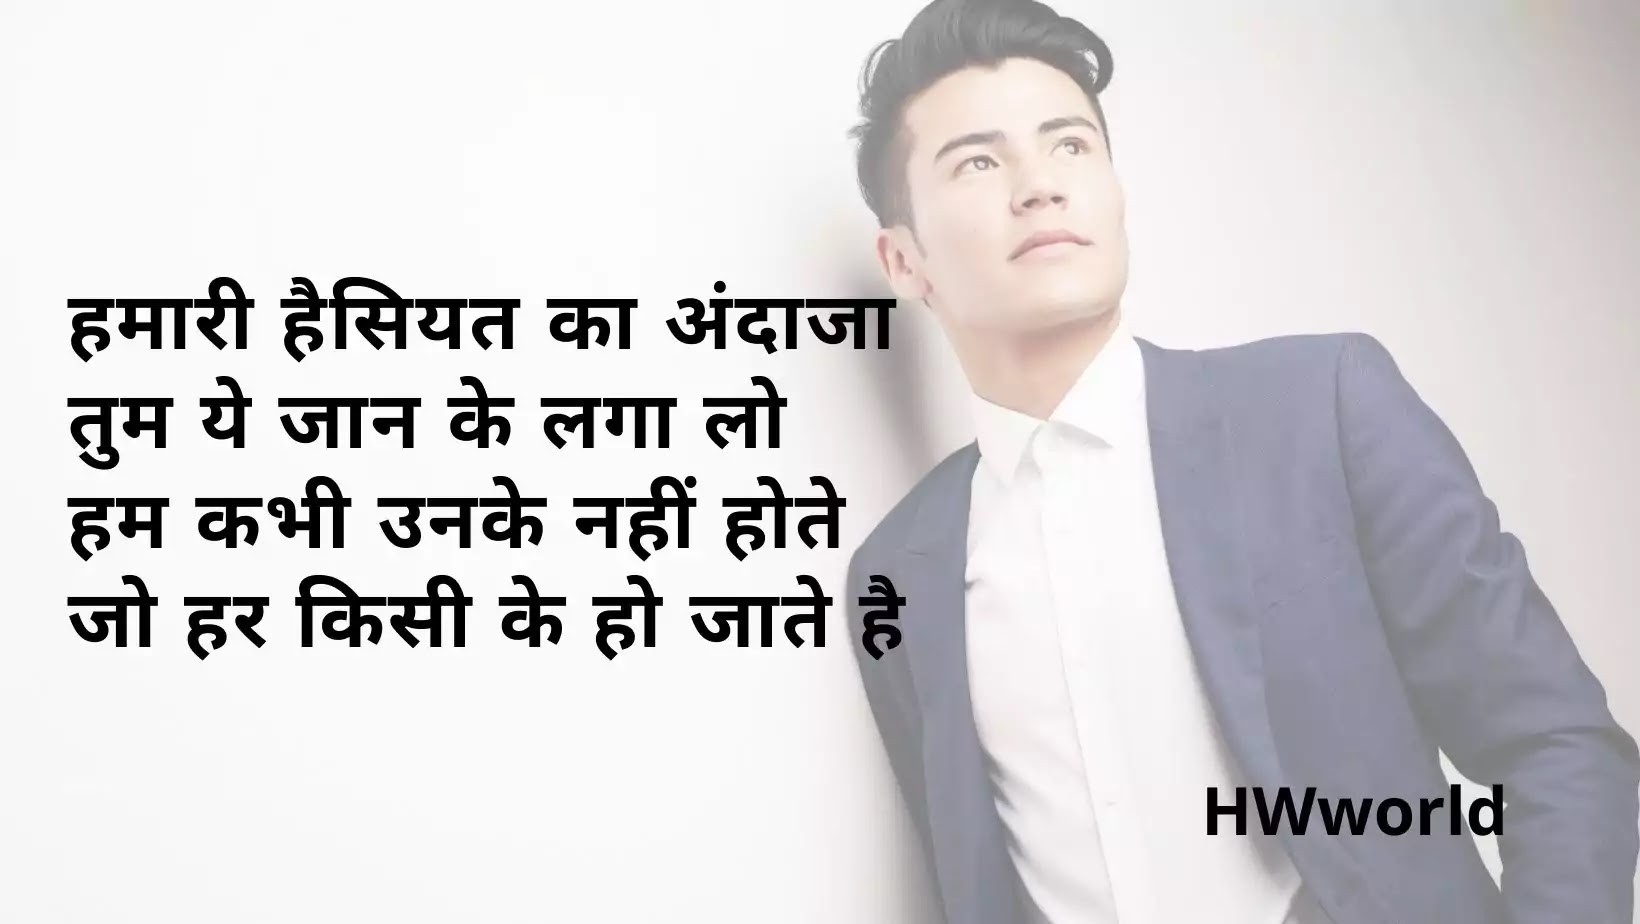 110+ Best Bad Boy Shayari Quotes in Hindi & English